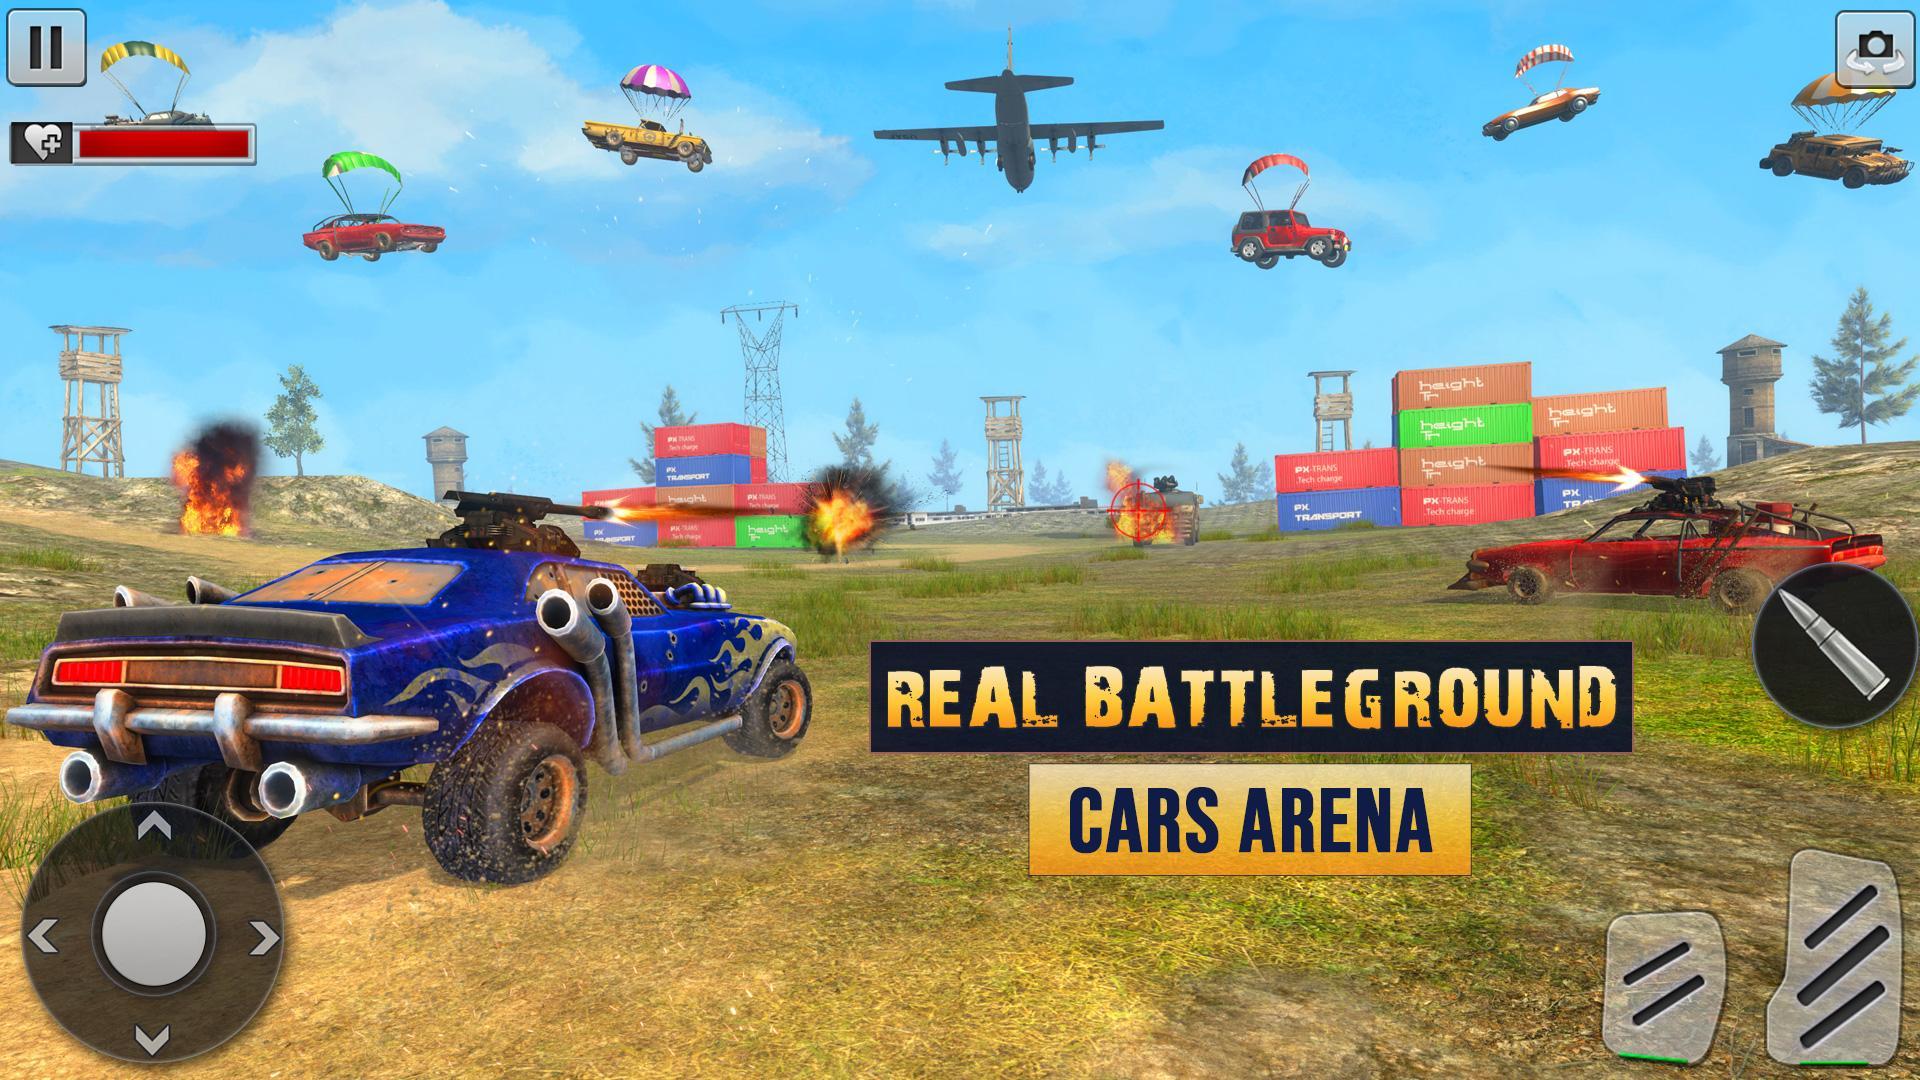 Cars arena cars and guns. Дерби игра. Car crash Arena. Концепт игры дерби. Battlegrounds cars.